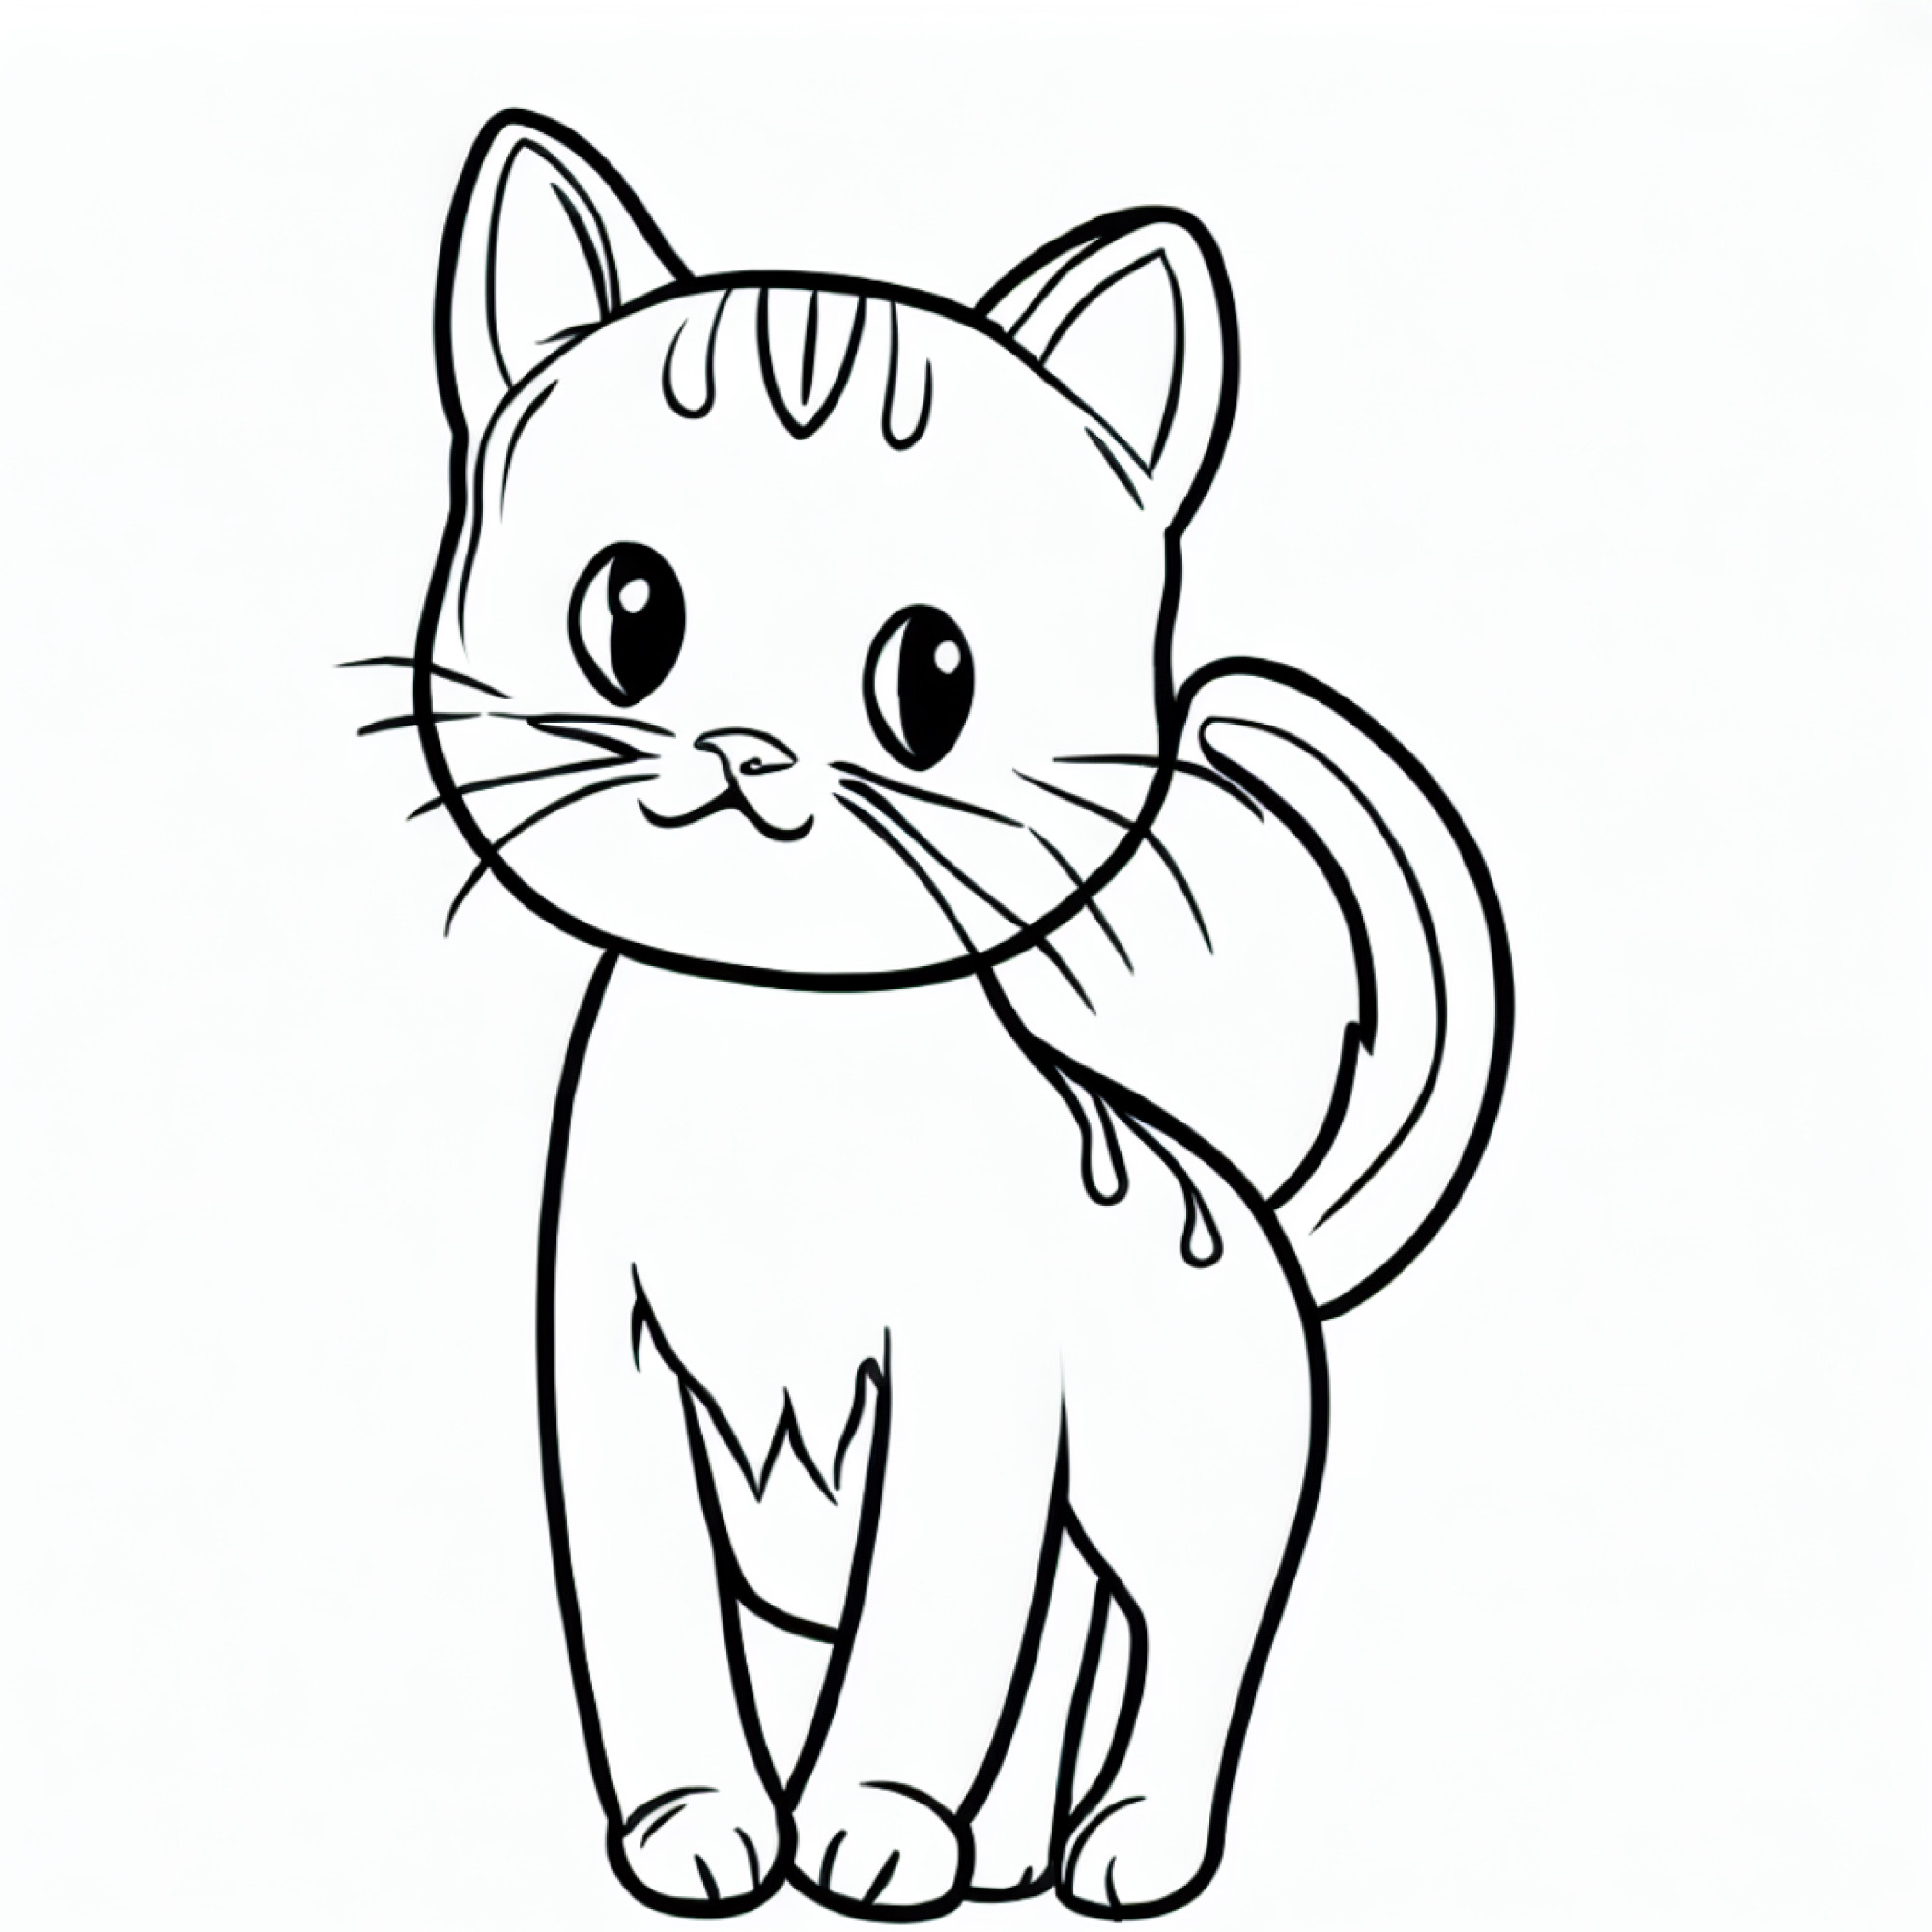 Раскраска для детей: удивленный кот с усами